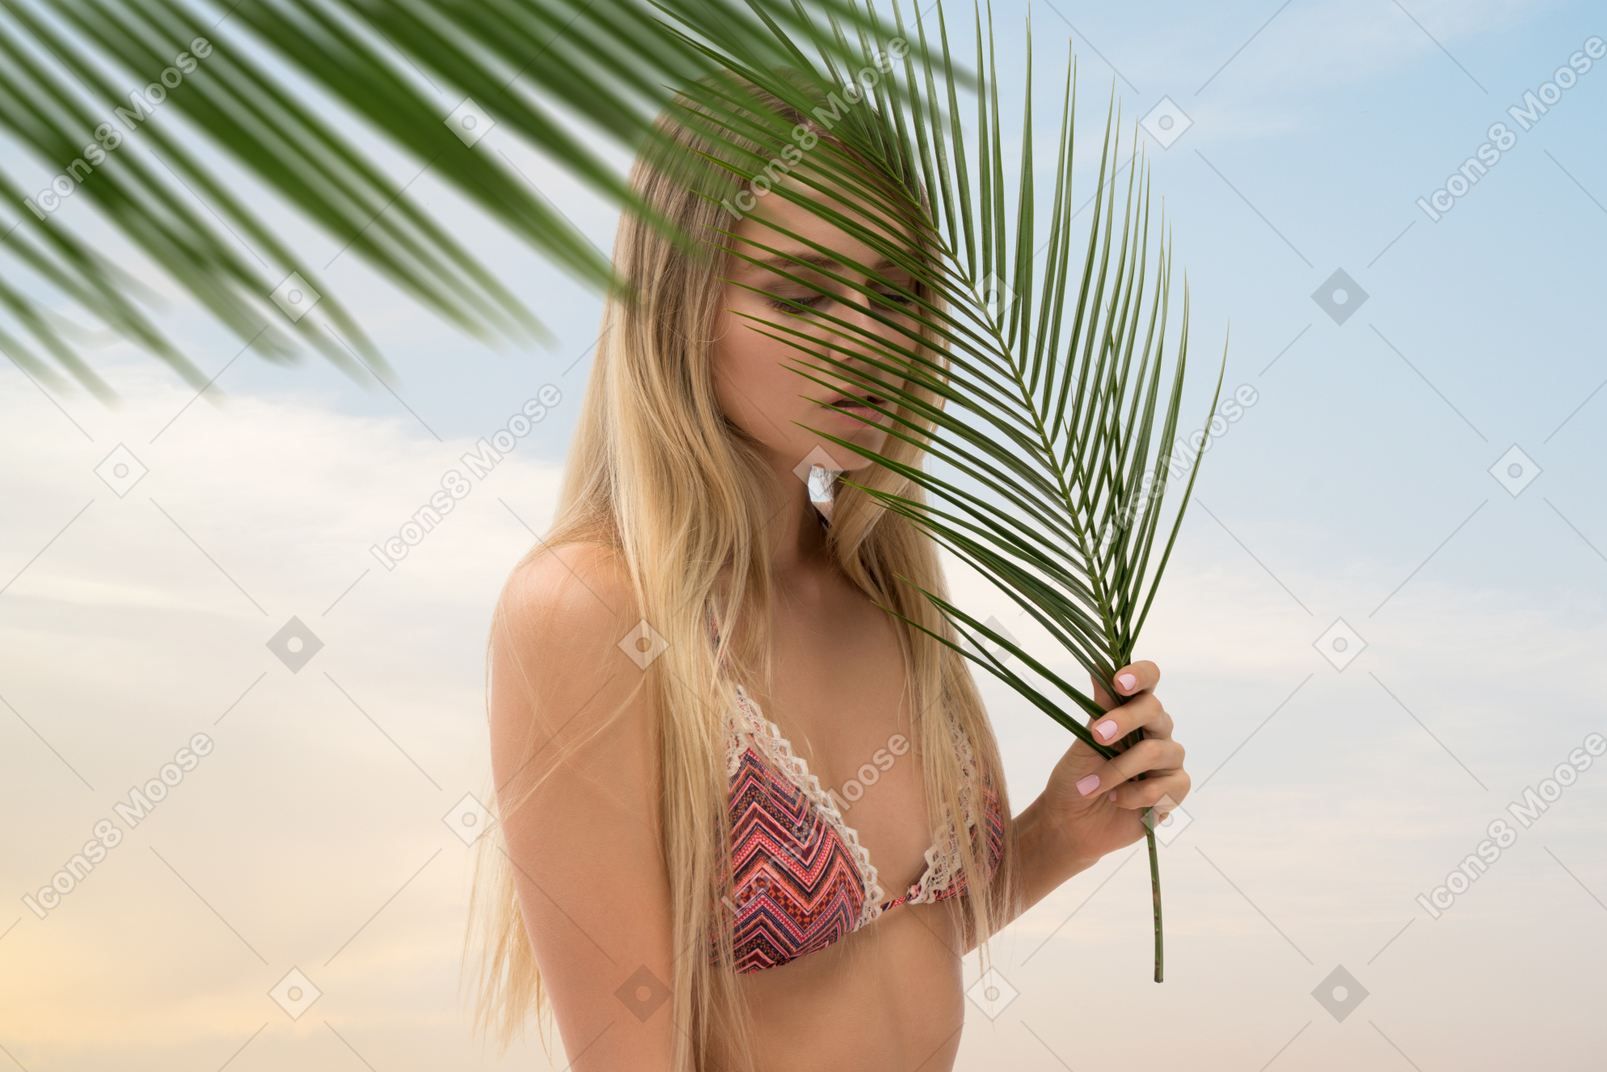 Young beautiful girl in bikini